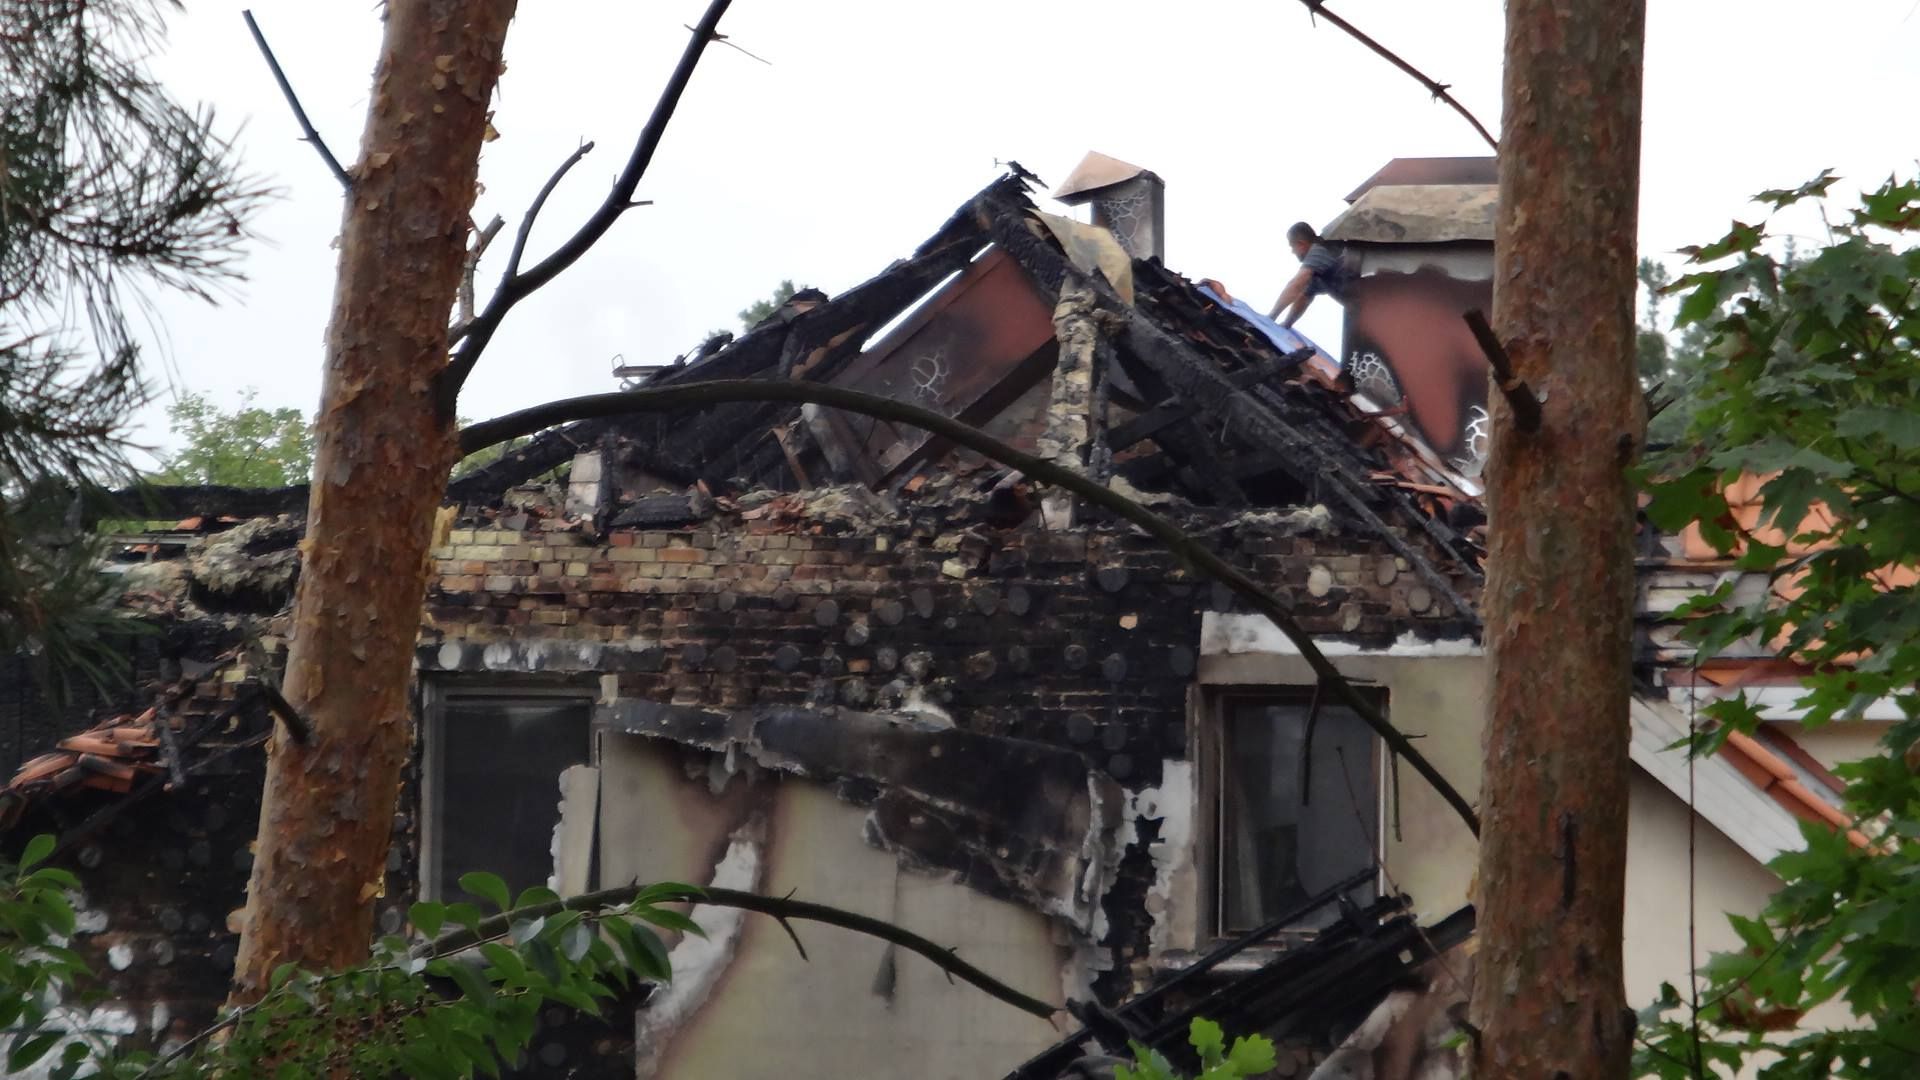 Прокурорские разборки с поджогами домов и подрывами произошли под Киевом, – журналист 